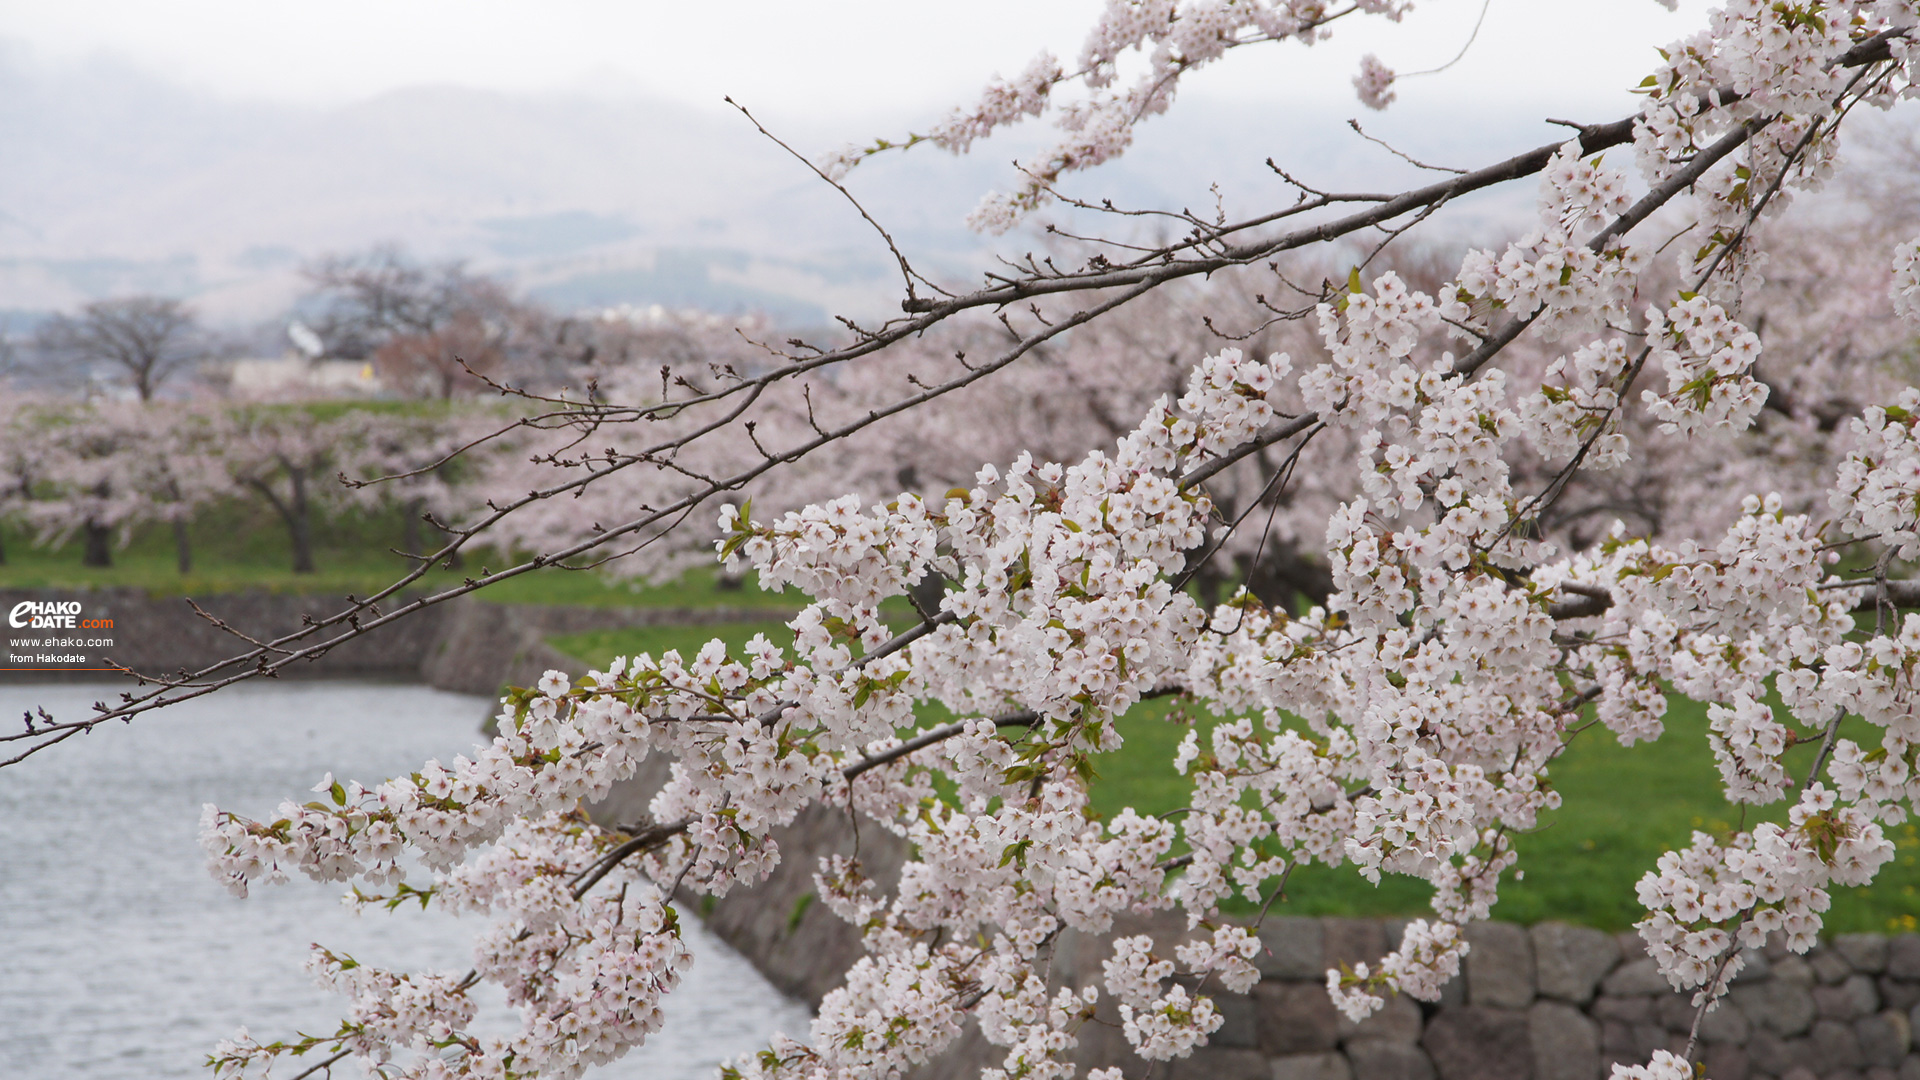 五稜郭公園のお堀と満開の桜の枝と 函館フォト散歩壁紙 函館市 道南地域ポータル E Hakodate